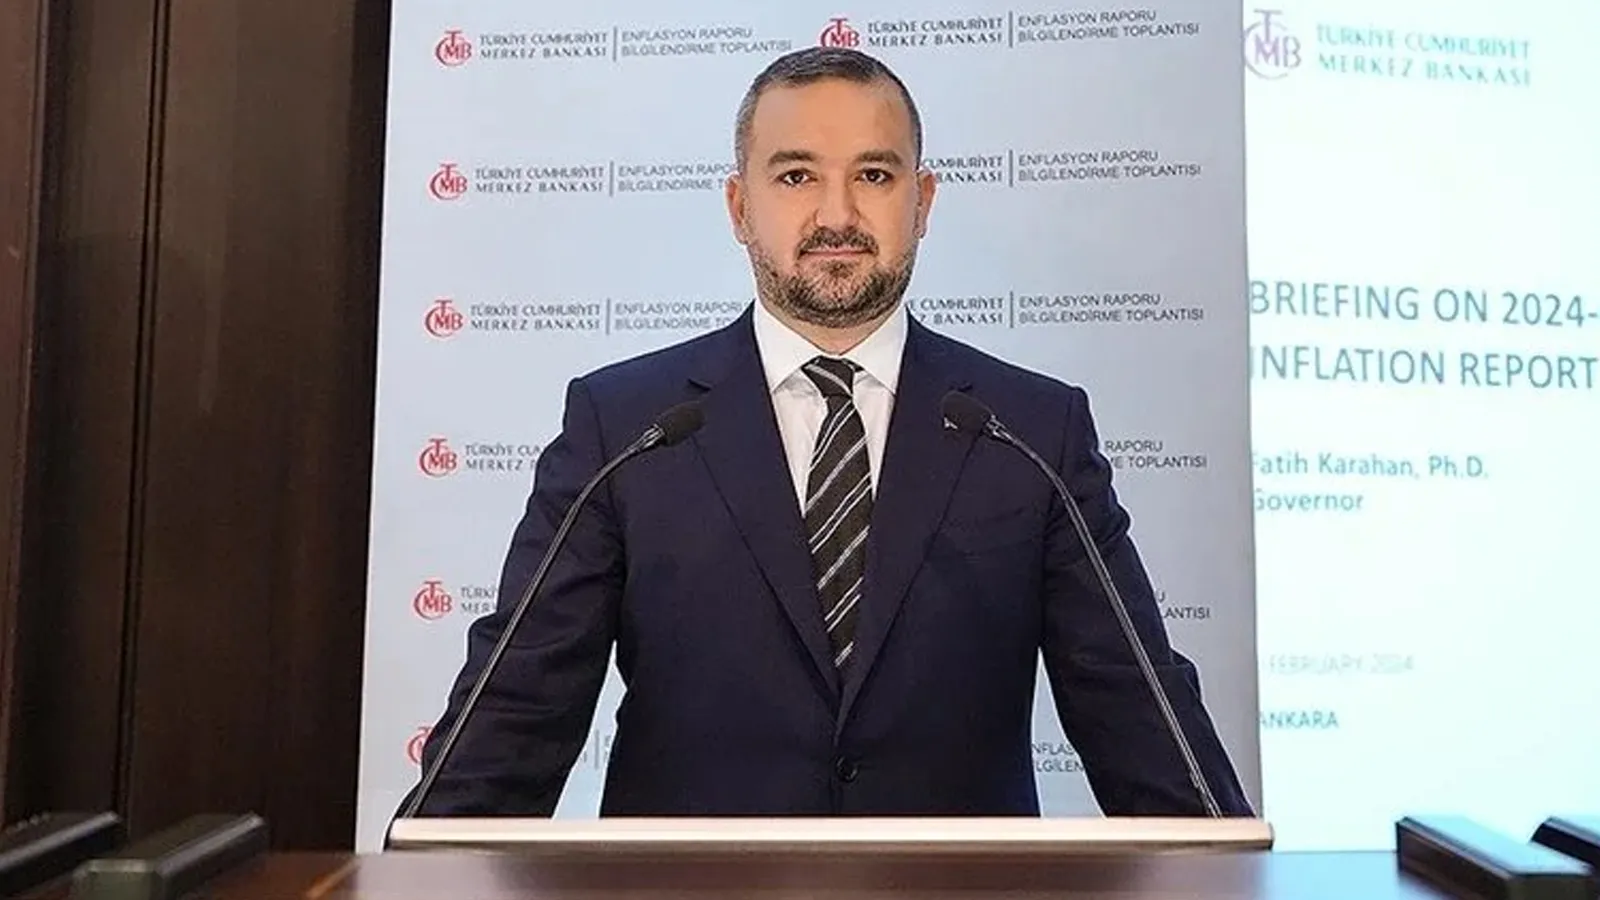 TCMB Başkanı Karahan: "Dezenflasyon konusunda gerekli adımlar atıldı"